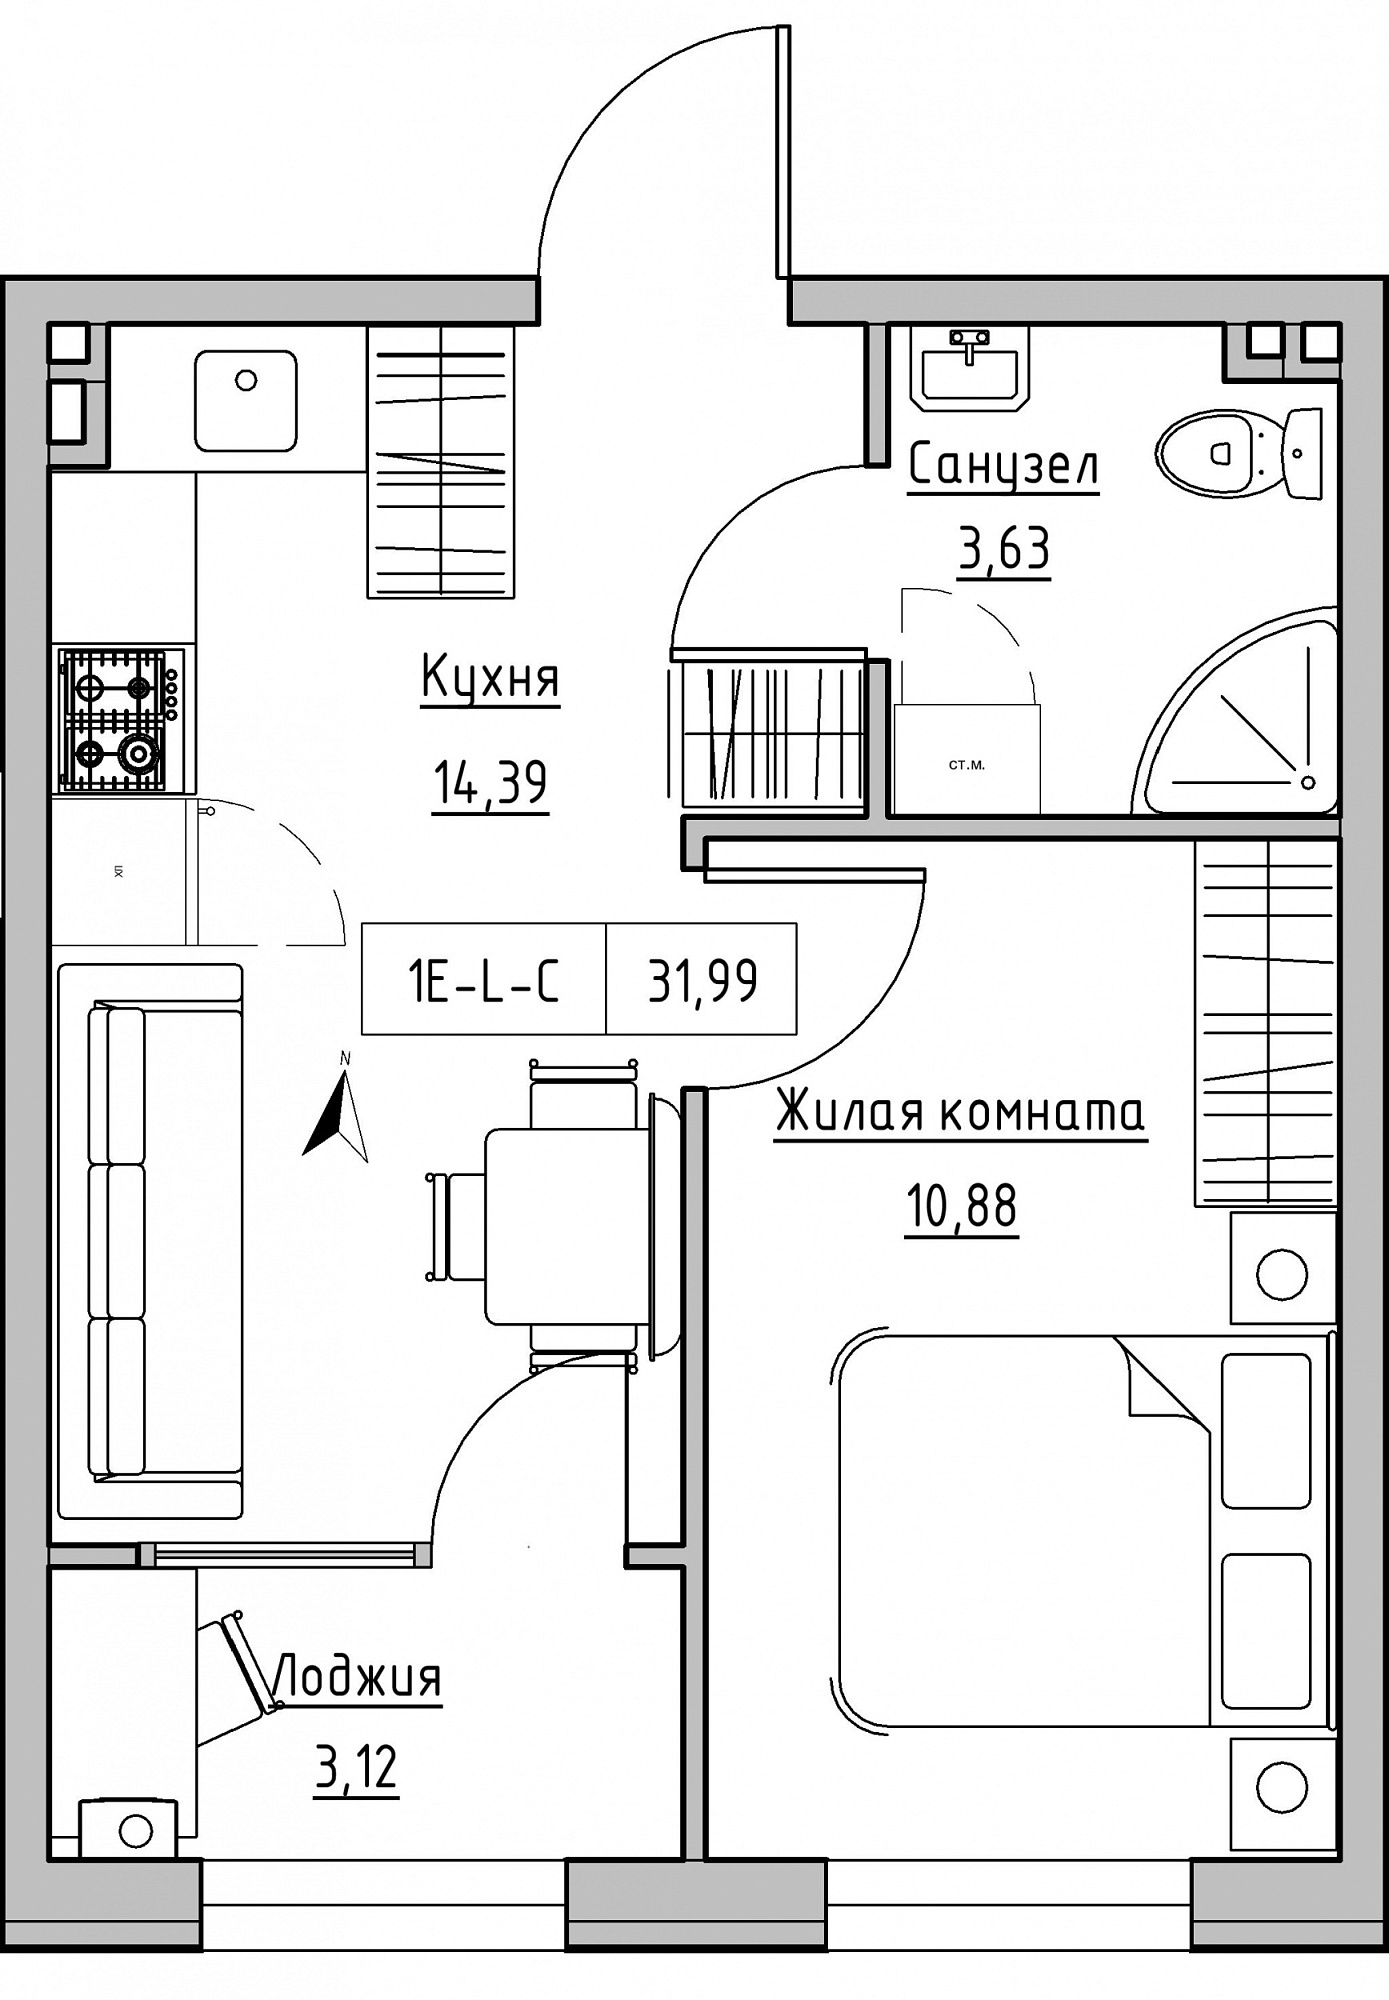 Планировка 1-к квартира площей 31.99м2, KS-024-01/0006.